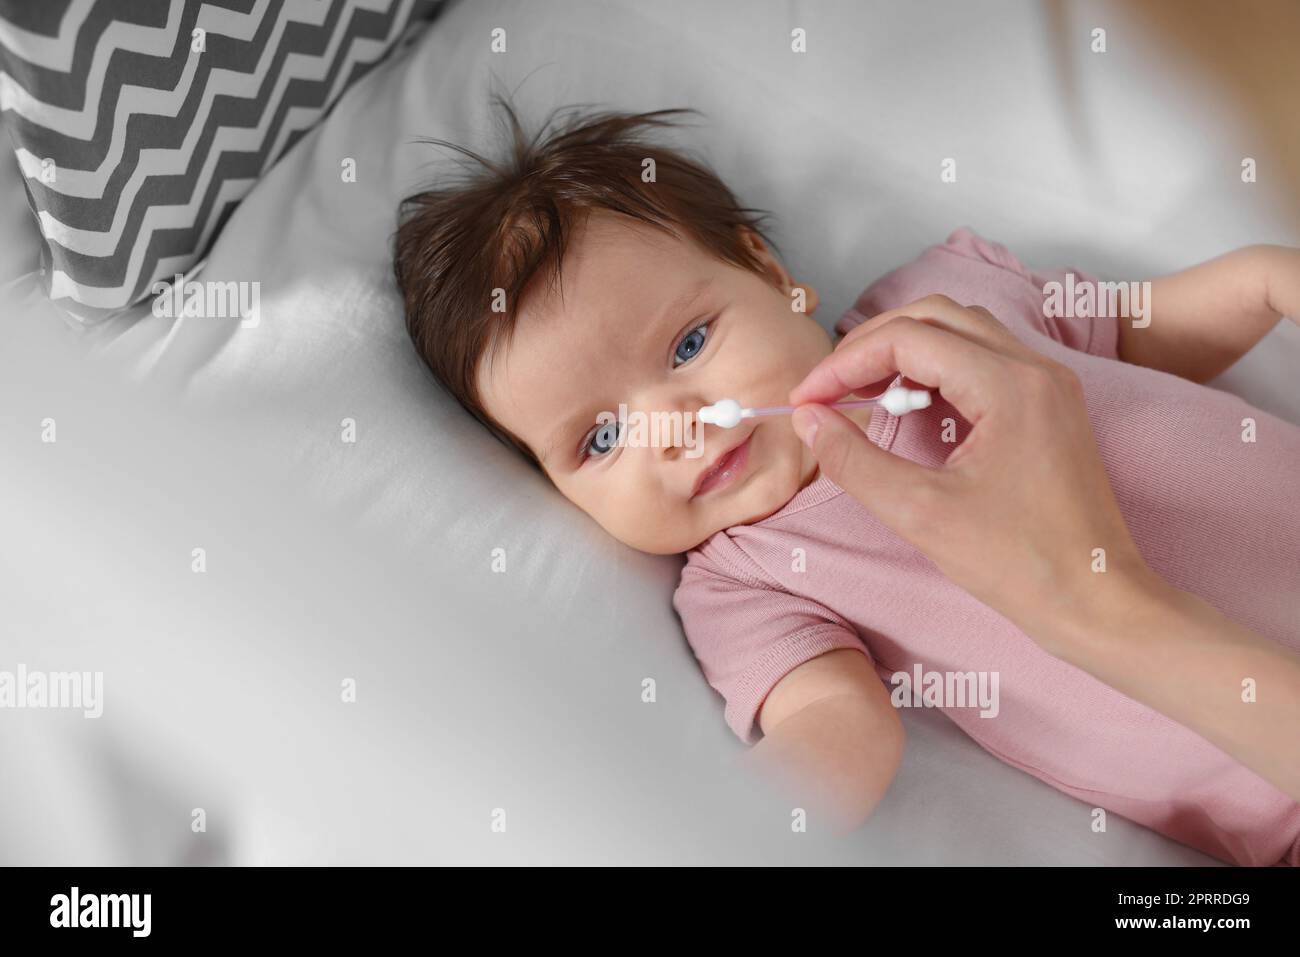 Mutter putzt die Nase ihres Babys mit Wattestäbchen auf dem Bett,  Nahaufnahme Stockfotografie - Alamy